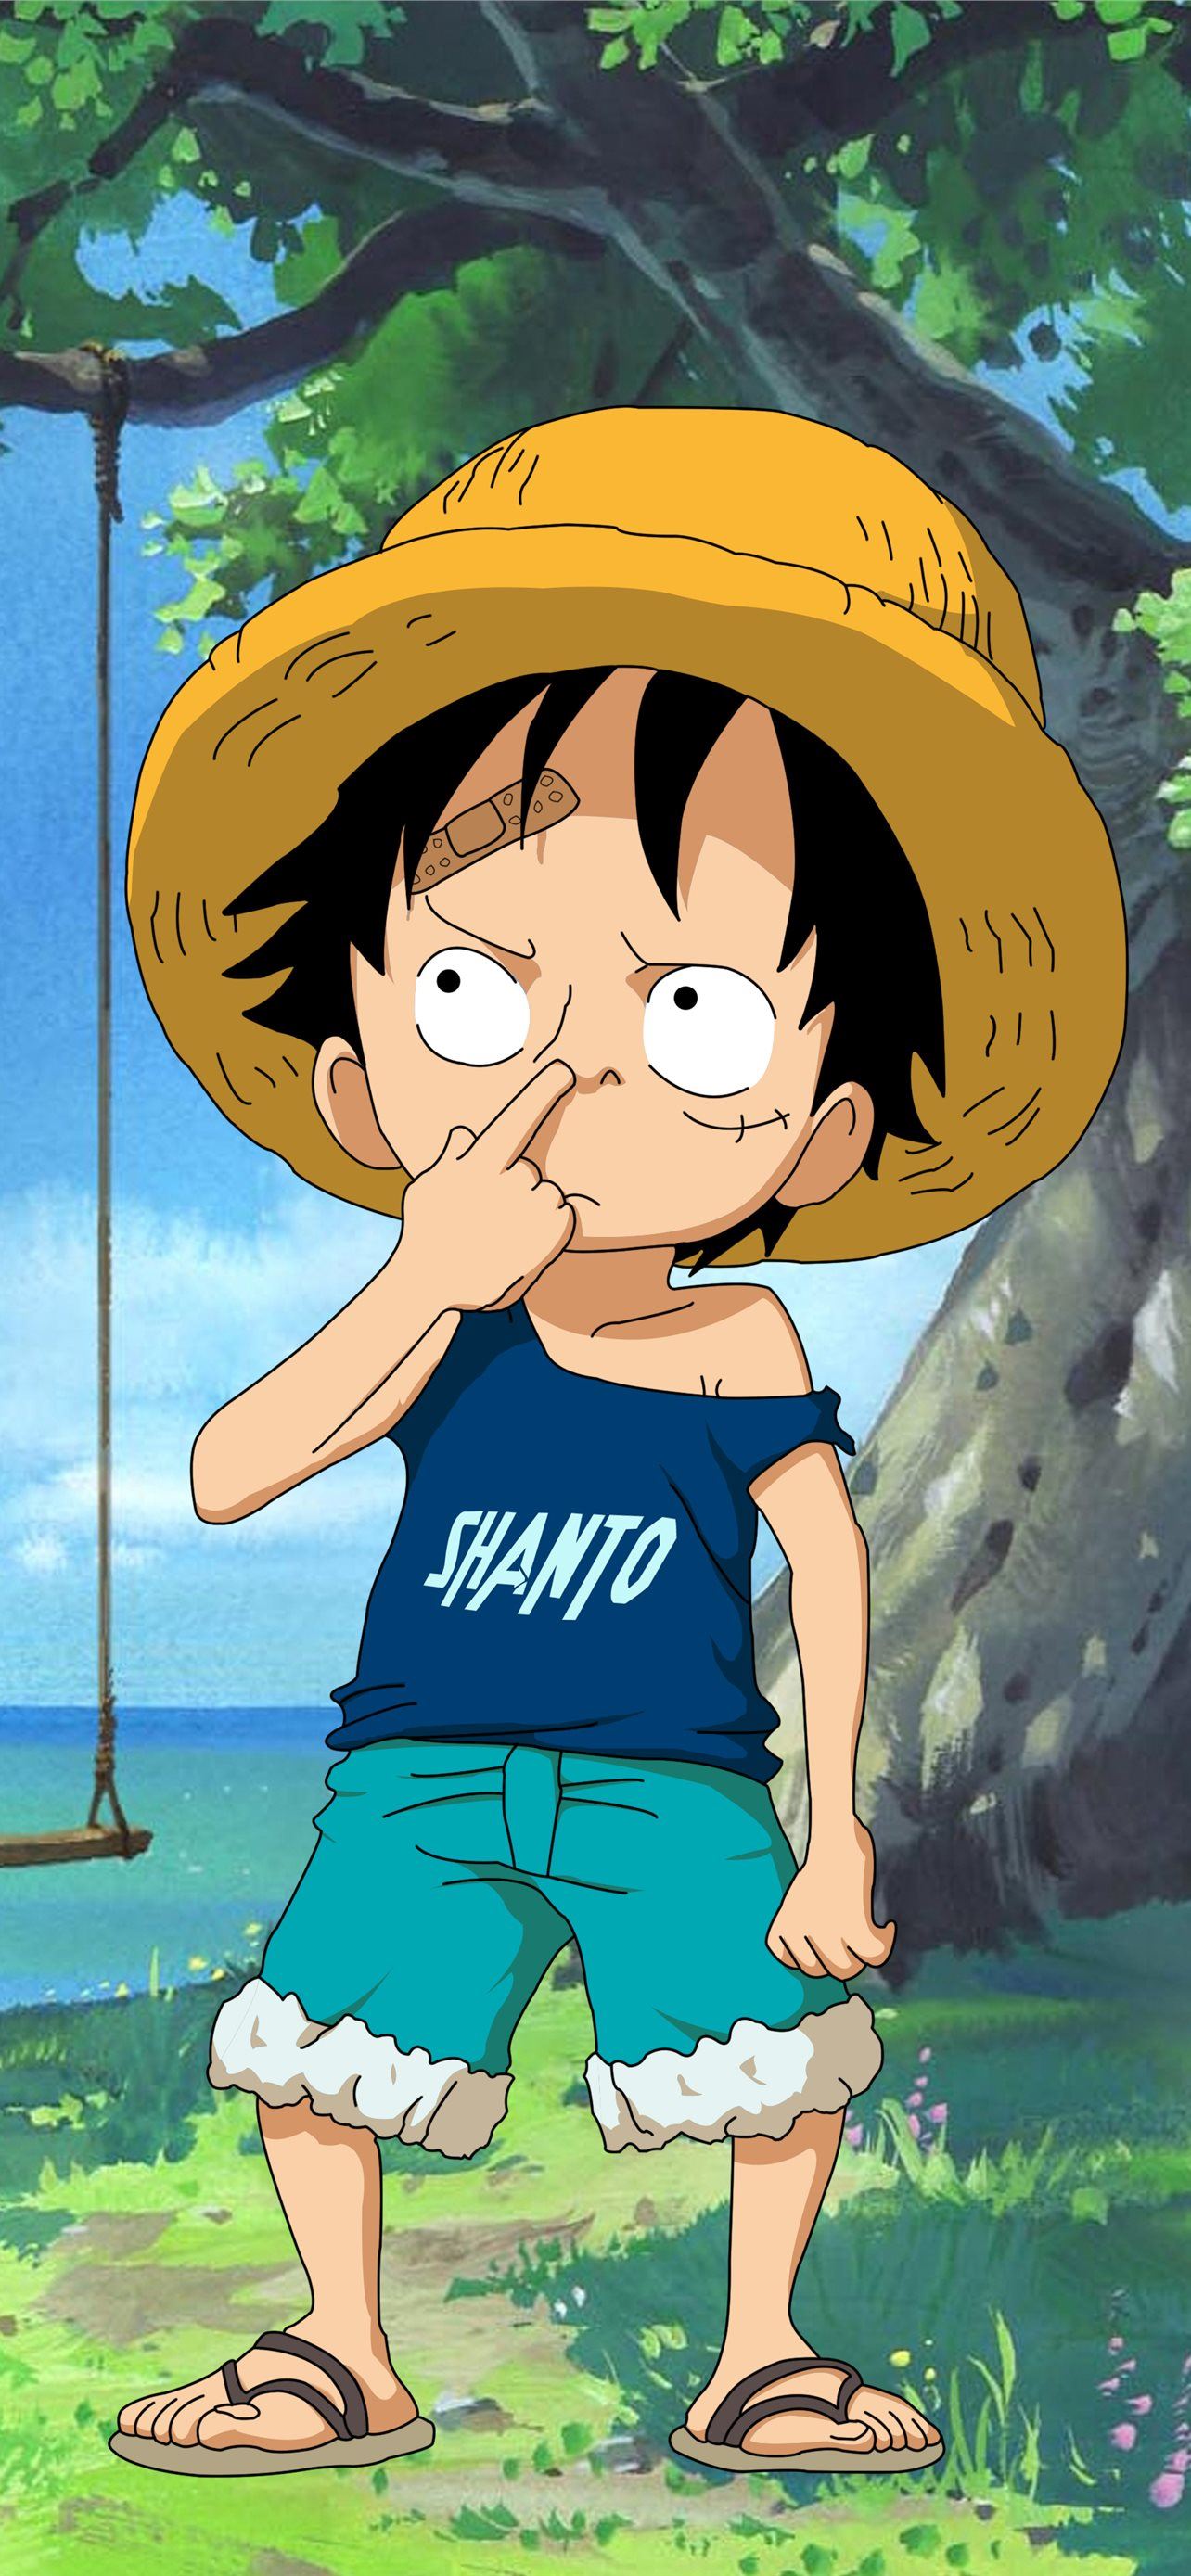 Kid Luffy - một nhân vật quen thuộc trong One Piece với câu chuyện kinh điển. Hãy xem những hình ảnh tuyệt đẹp về Kid Luffy trên trang web của chúng tôi. Bạn sẽ được trải nghiệm tình cảm và sức mạnh của nhân vật này thông qua những bức ảnh đầy màu sắc.